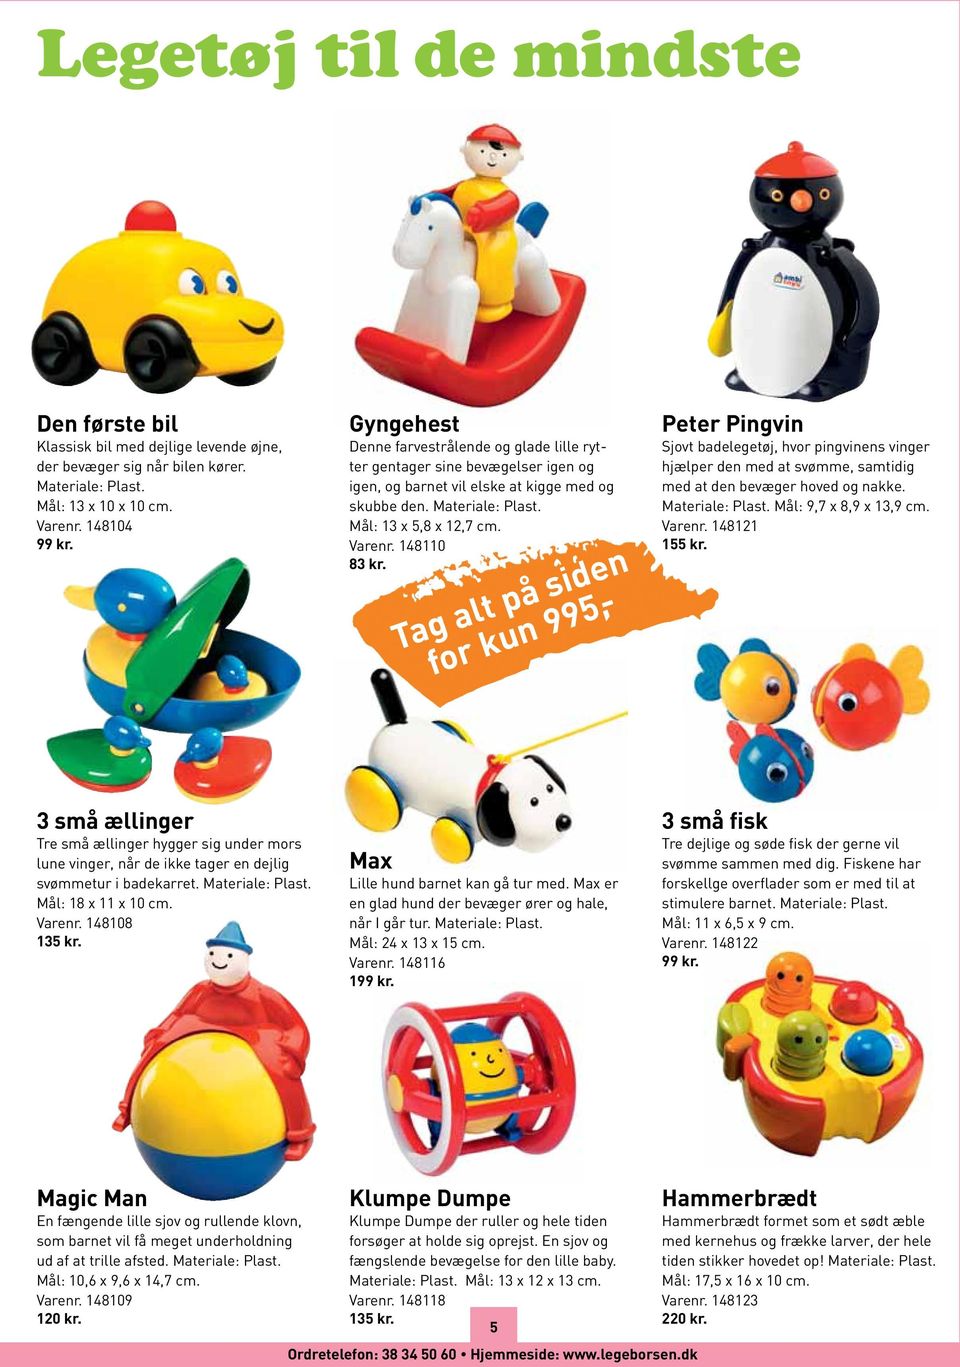 148110 83 kr. Tag alt på siden for kun 995,- Peter Pingvin Sjovt badelegetøj, hvor pingvinens vinger hjælper den med at svømme, samtidig med at den bevæger hoved og nakke. Materiale: Plast.